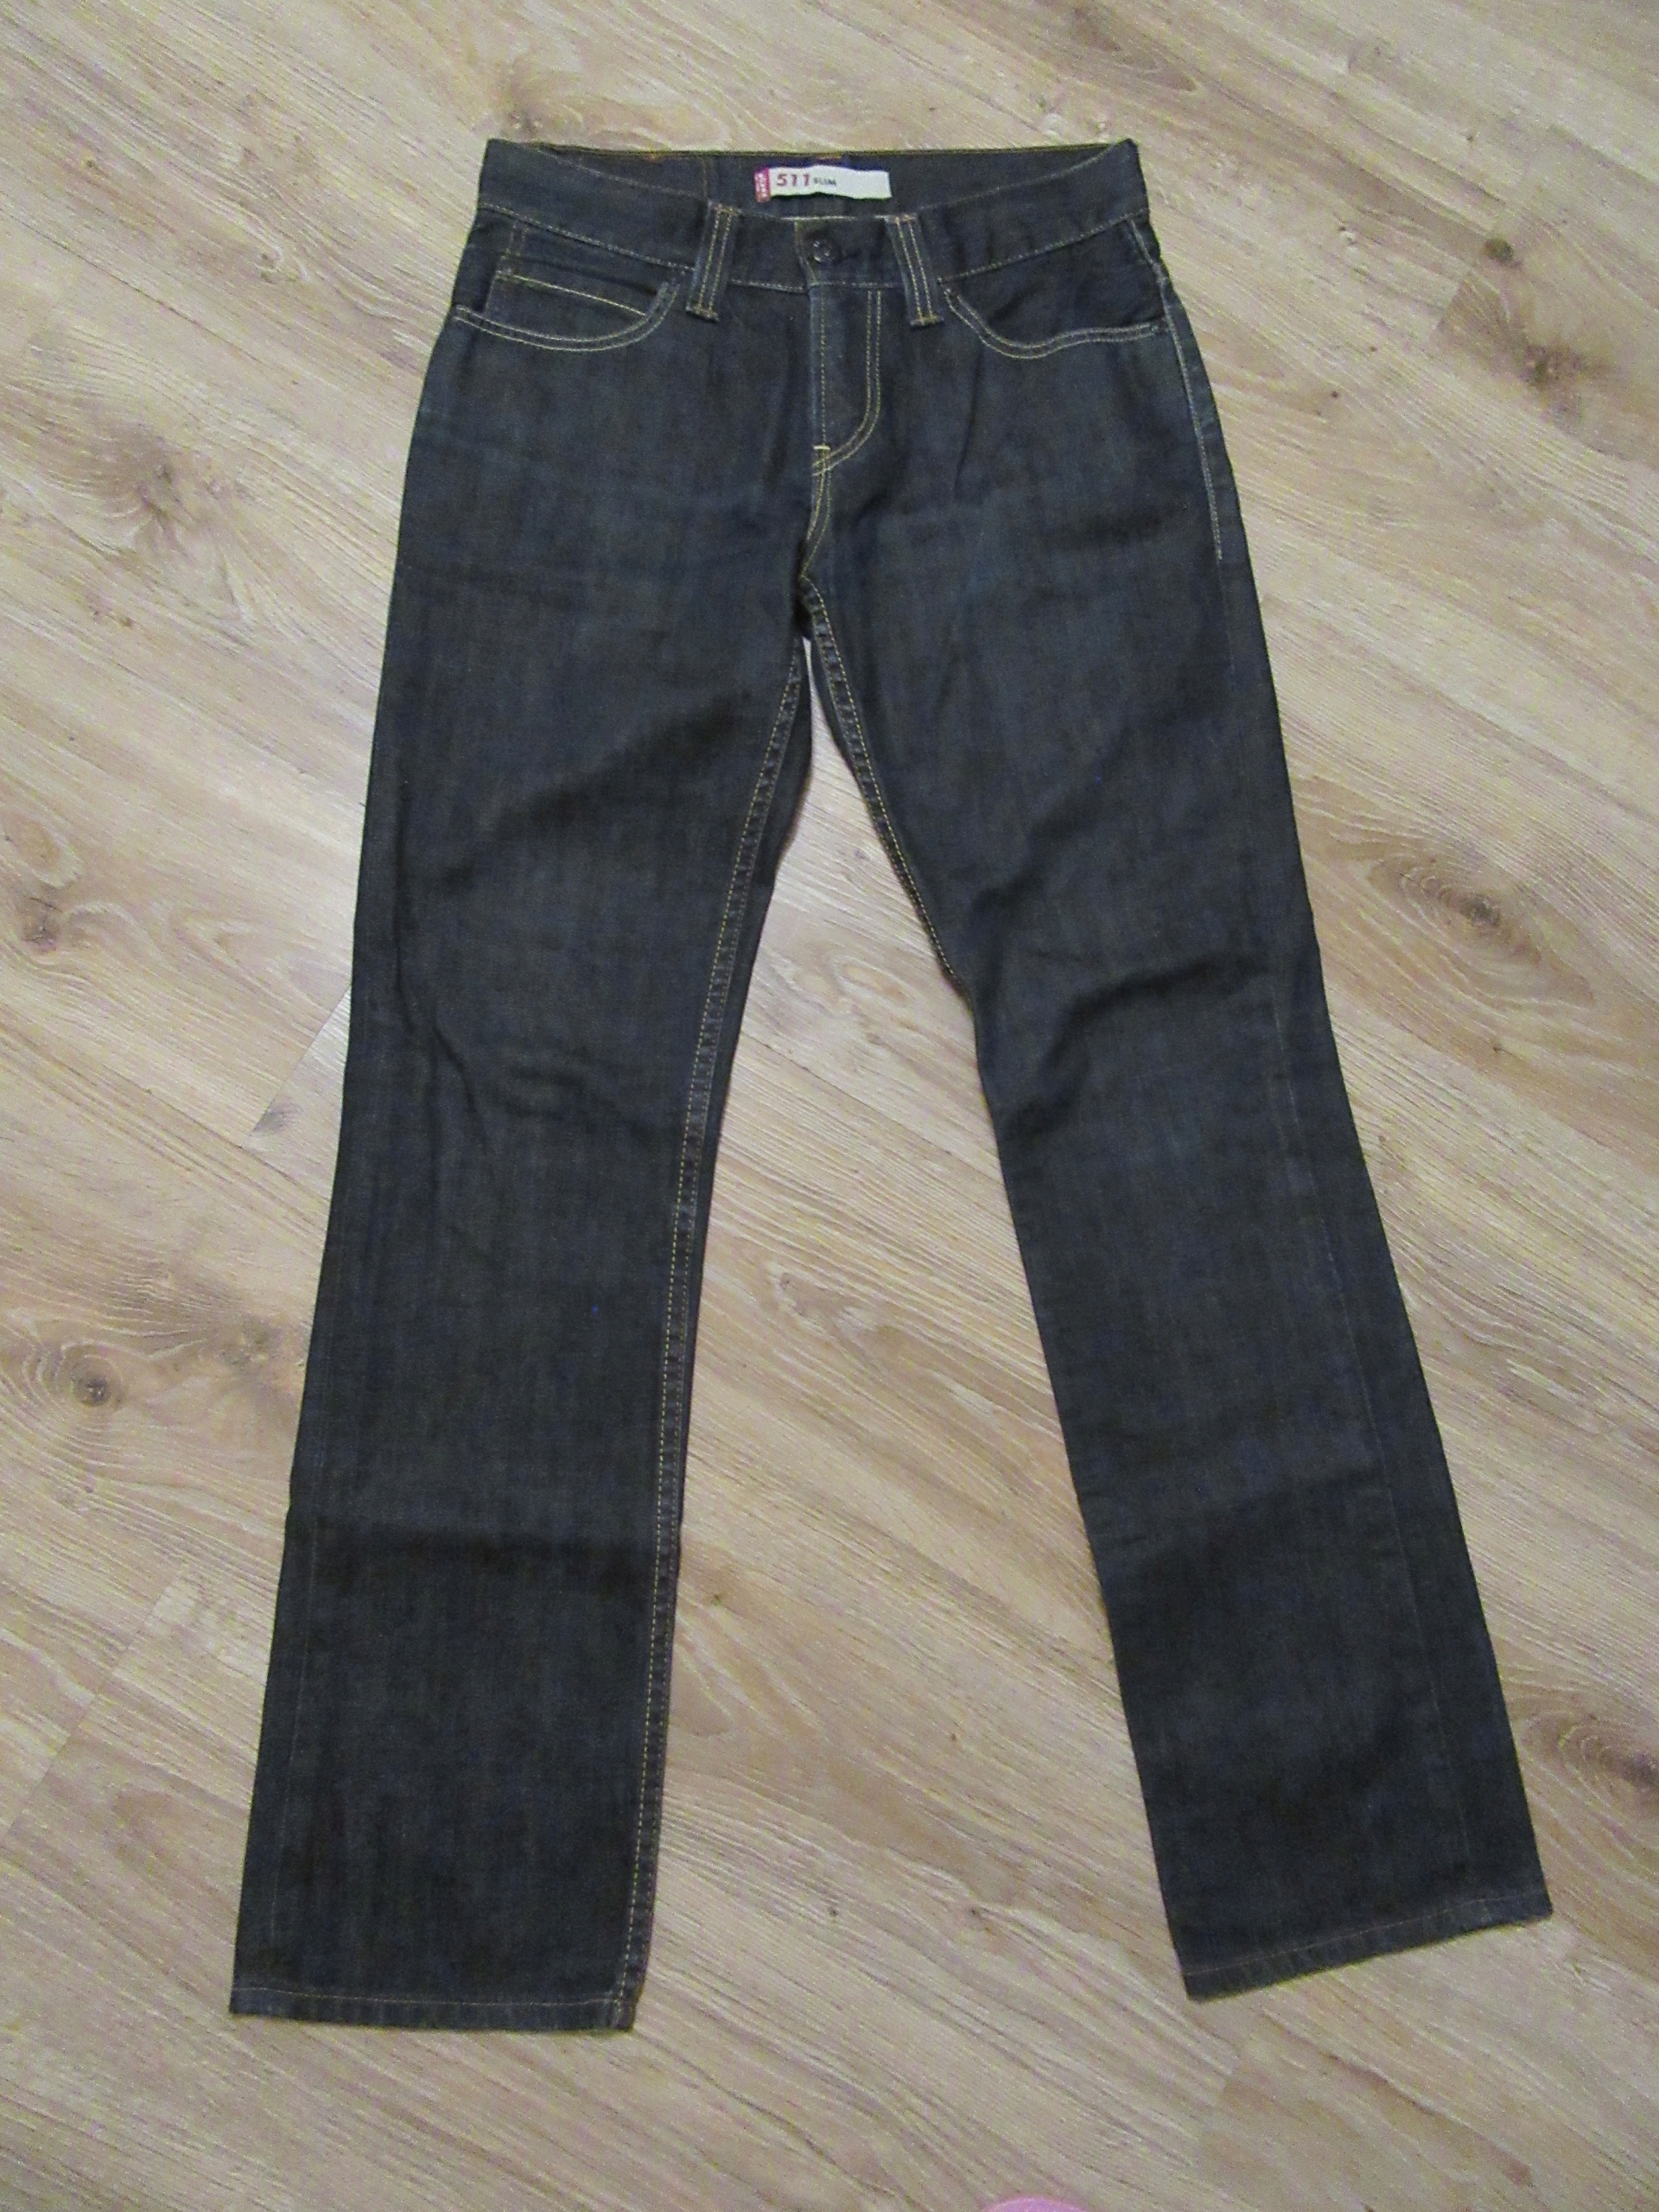 LEVI'S 511 SLIM męskie jeansy spodnie klasyk 31/32 13211719216 